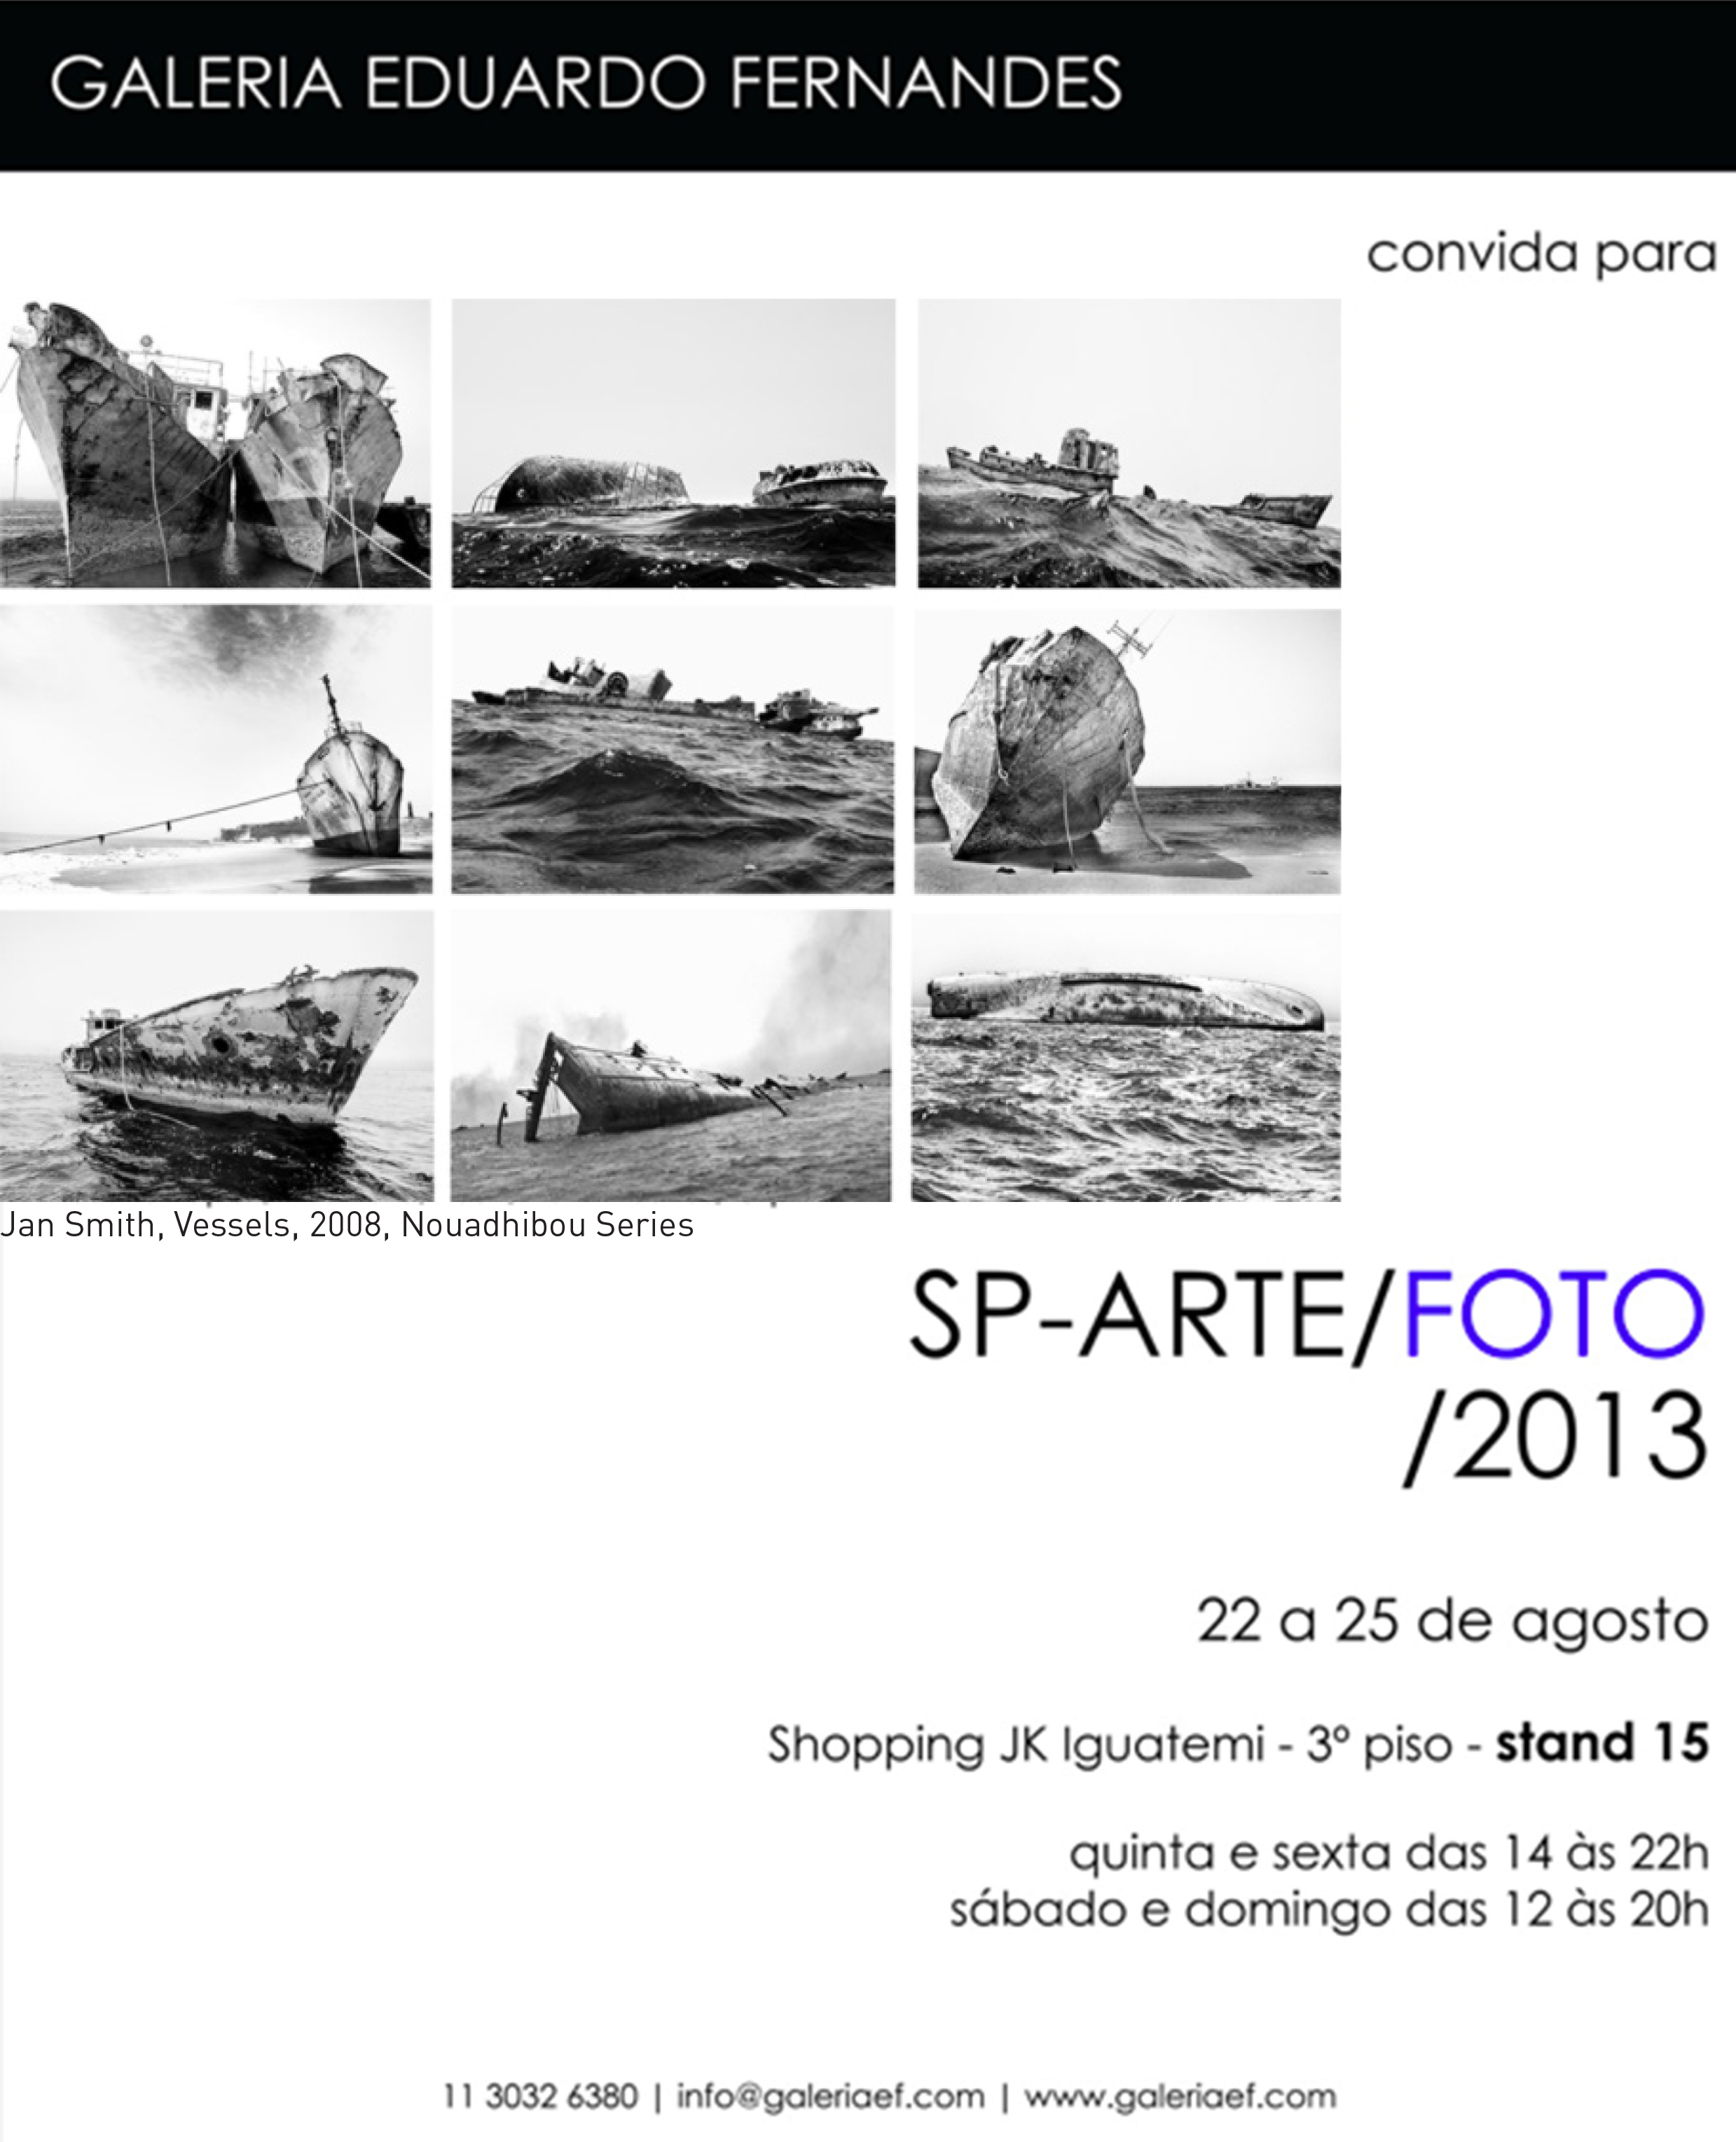 SP-Arte Foto 2013 Convite3